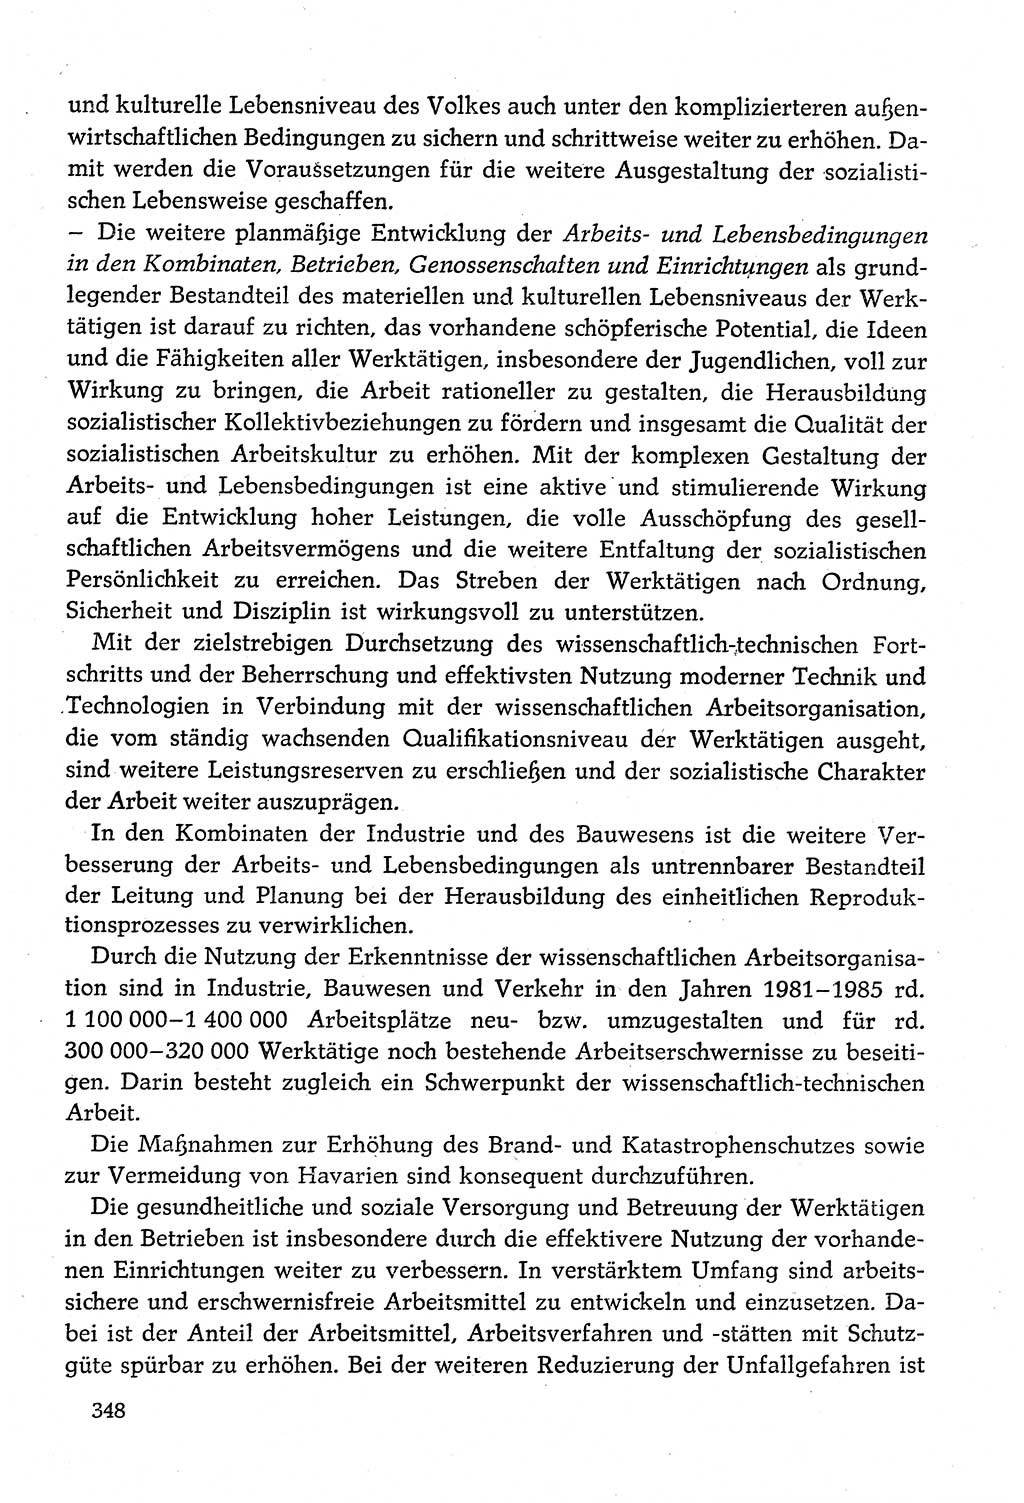 Dokumente der Sozialistischen Einheitspartei Deutschlands (SED) [Deutsche Demokratische Republik (DDR)] 1980-1981, Seite 348 (Dok. SED DDR 1980-1981, S. 348)